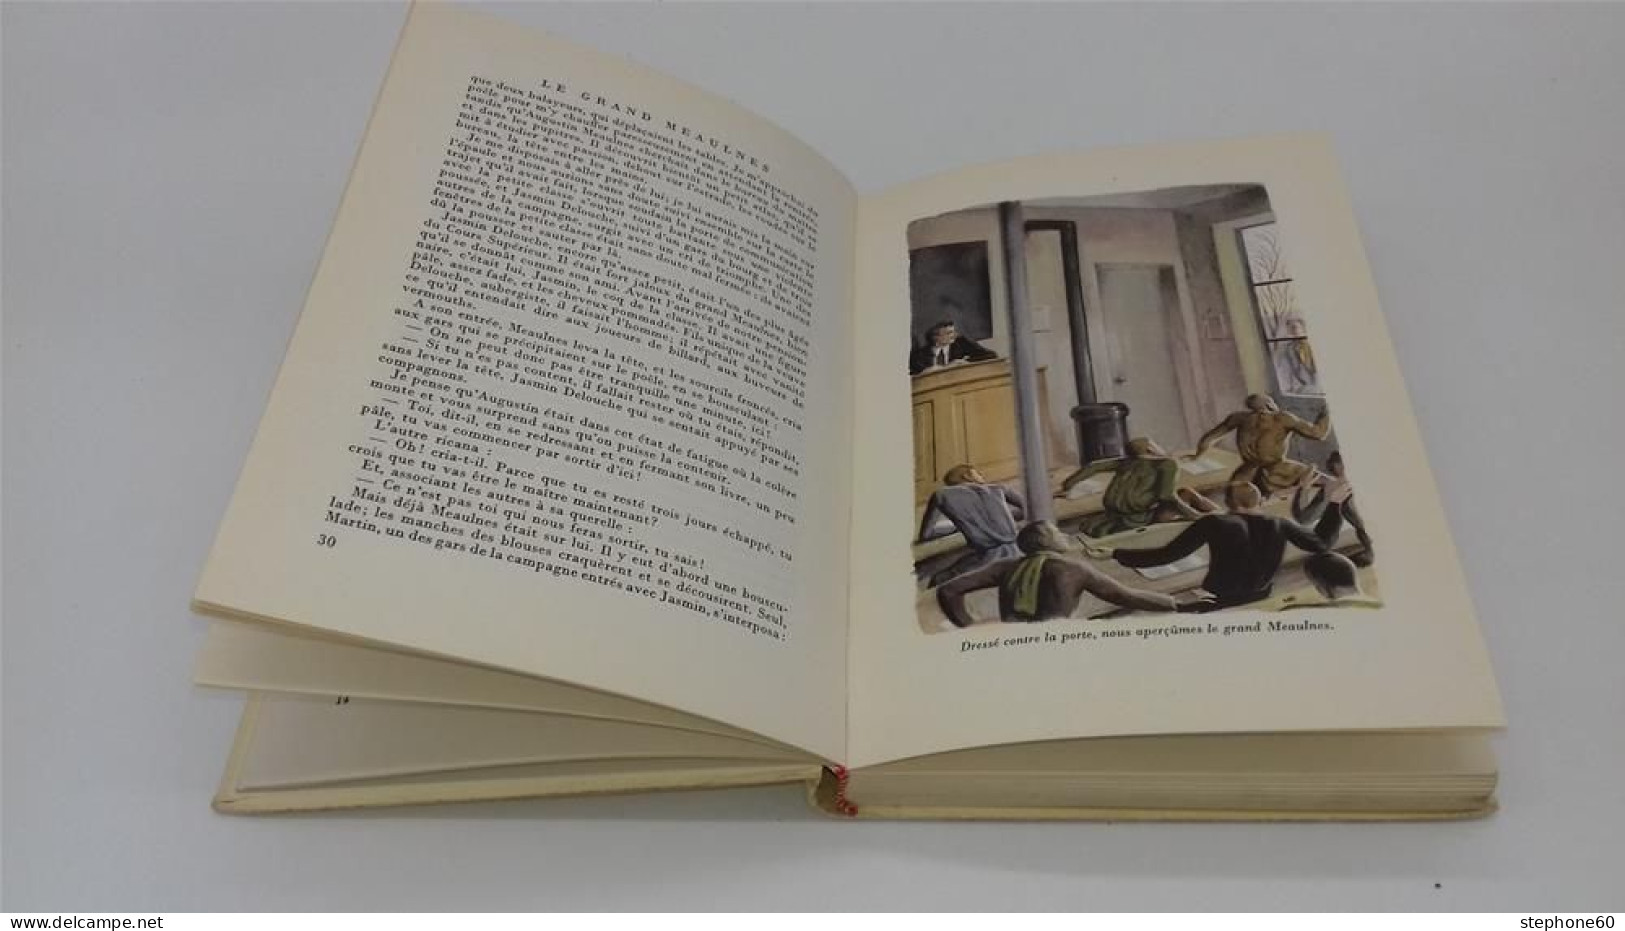 998 - (445) Le Grand Meaulnes - Alain Fournier - C. Delaunay 1959 - Rouge Et Or - Hachette